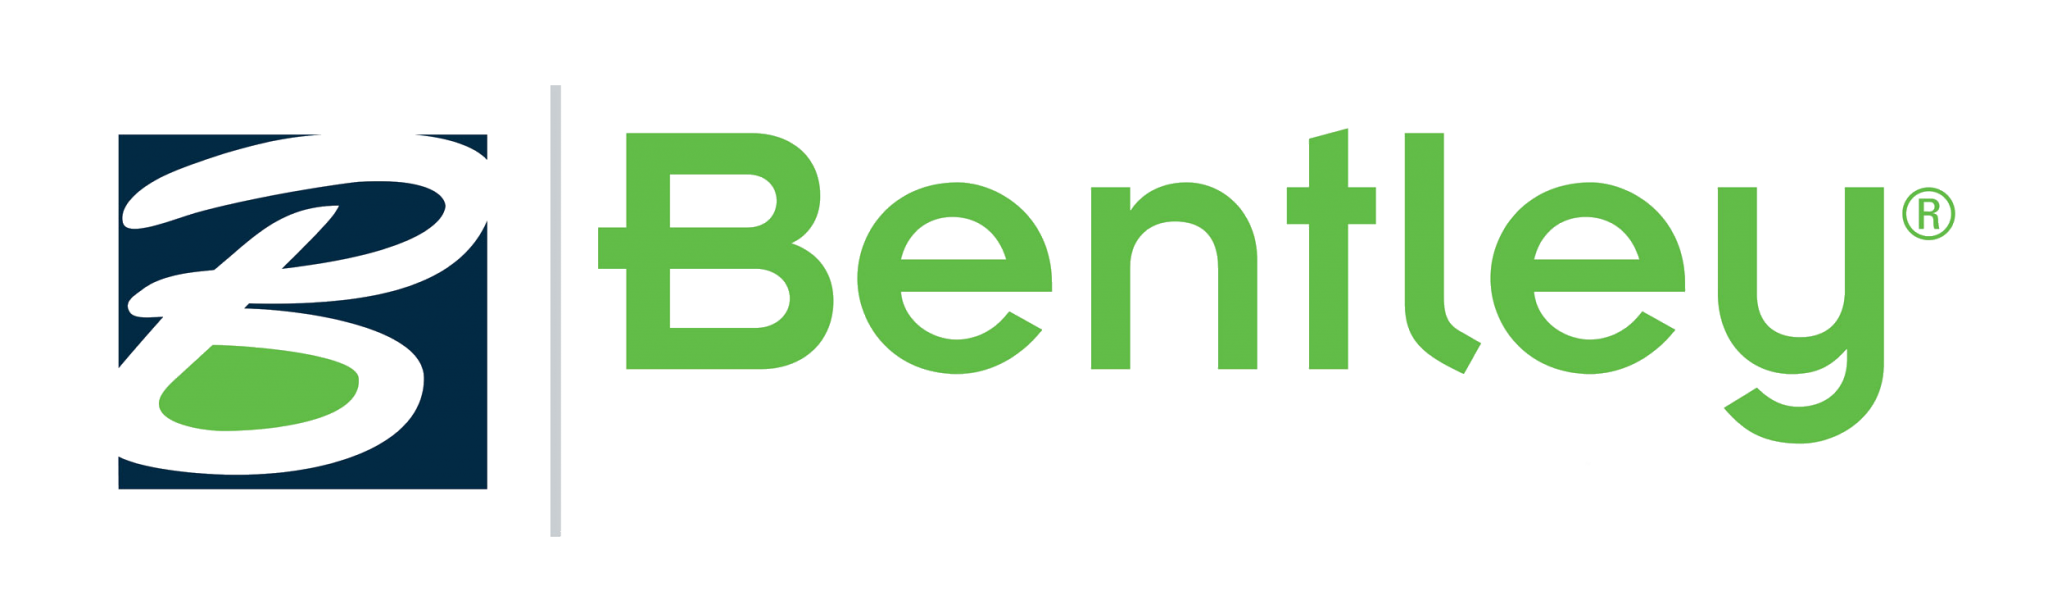 Bentley Logo PNG - 180205